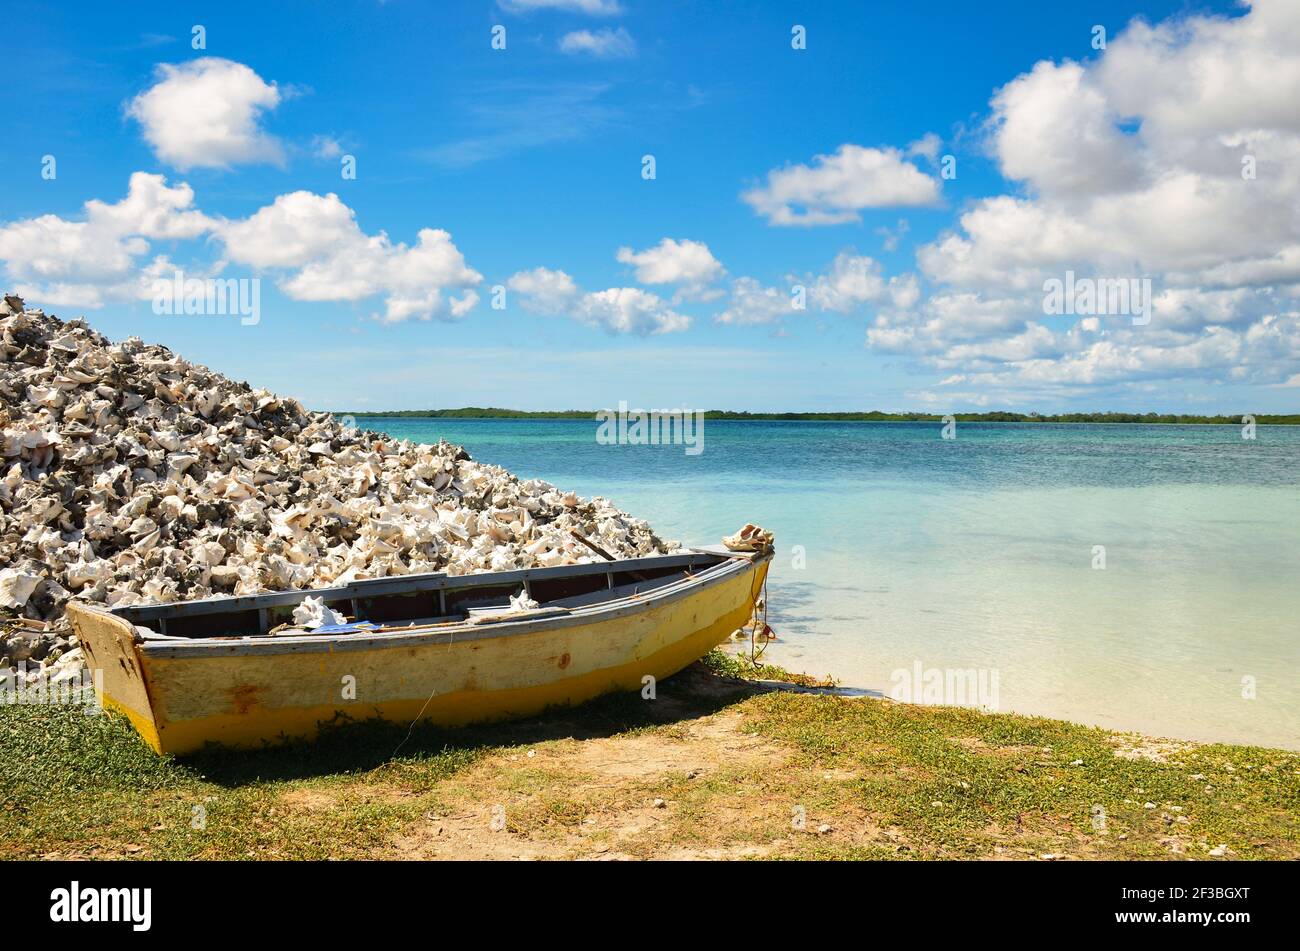 vecchio bot rustico accanto ad un mucchio di cozze sulla spiaggia sabbiosa dell'isola caraibica a bonaire. Antille Olandesi. Foto Stock